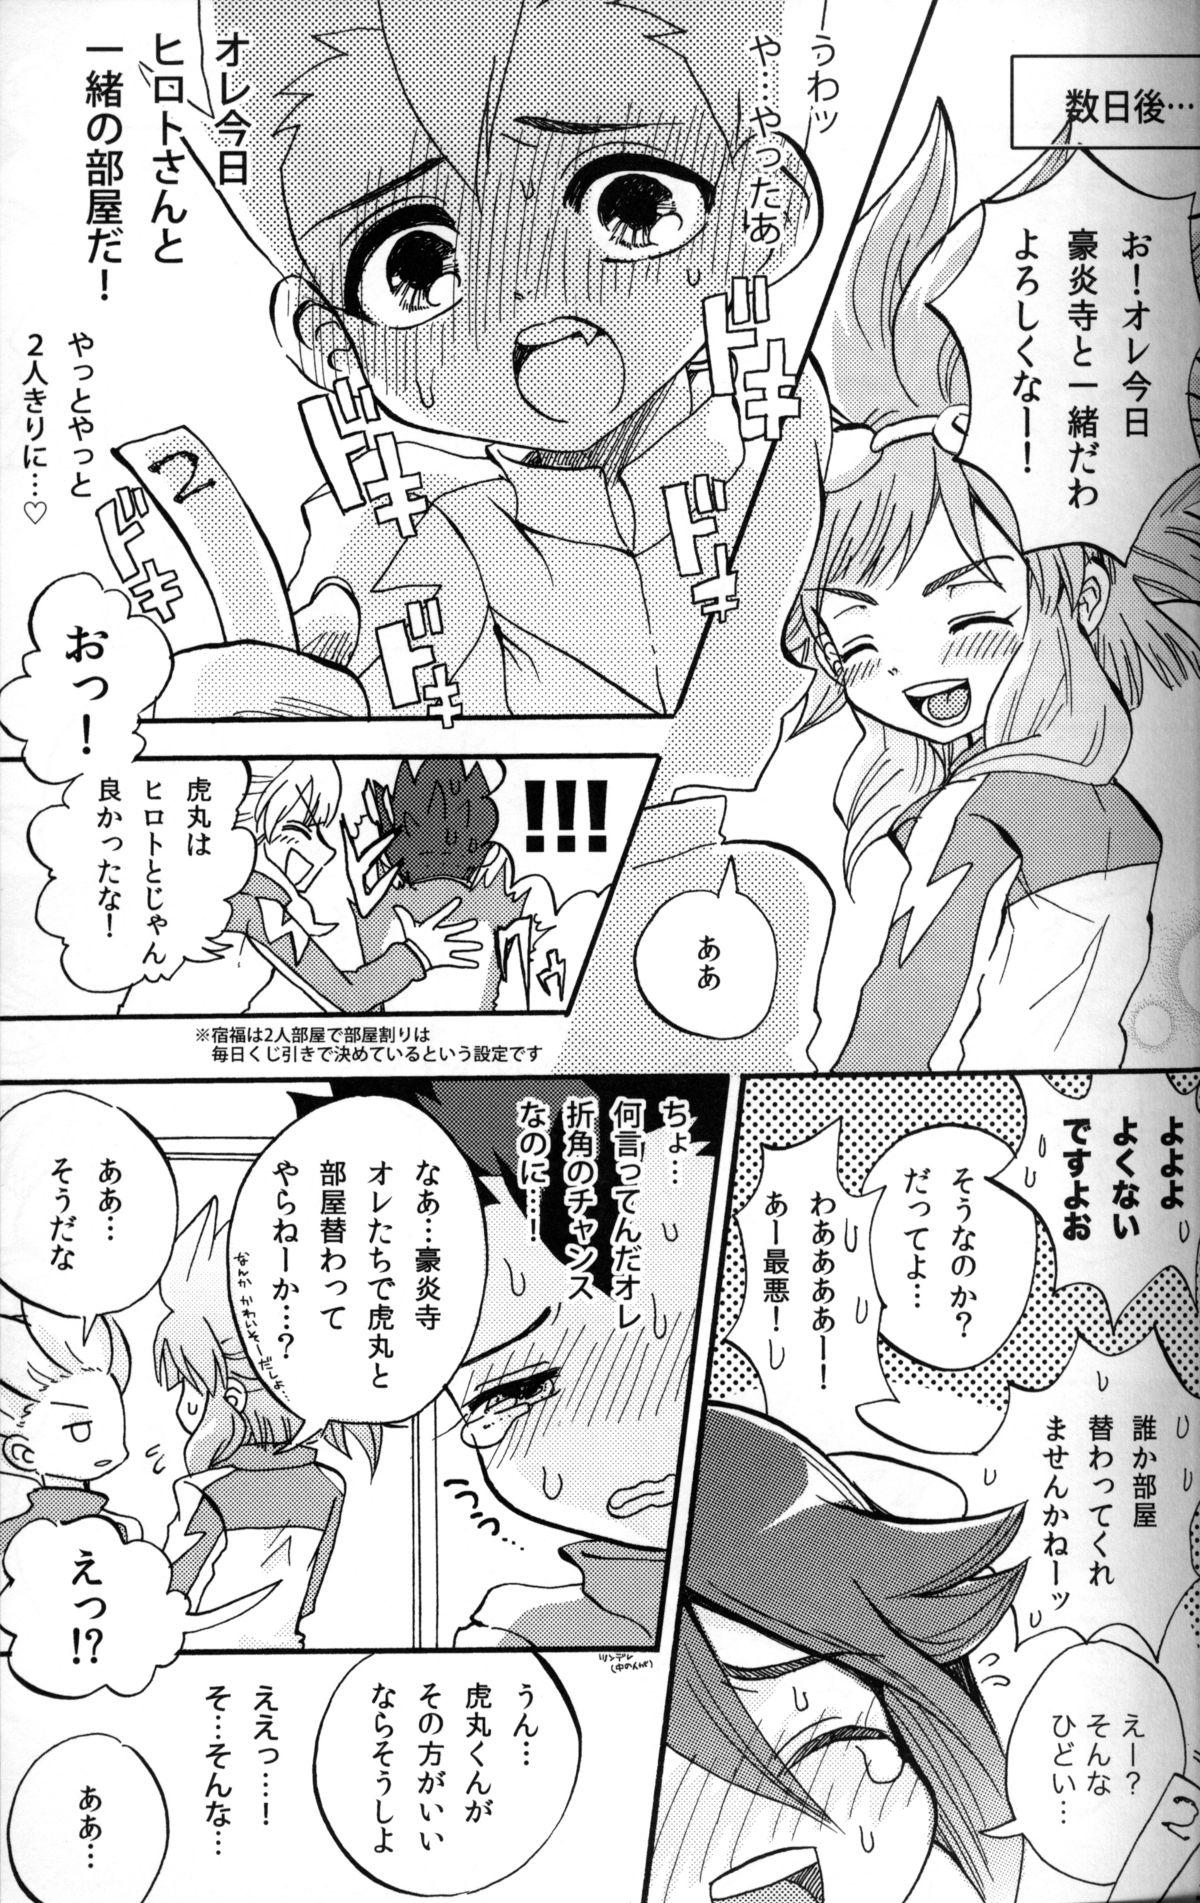 Amatuer G3! - Inazuma eleven Pene - Page 3